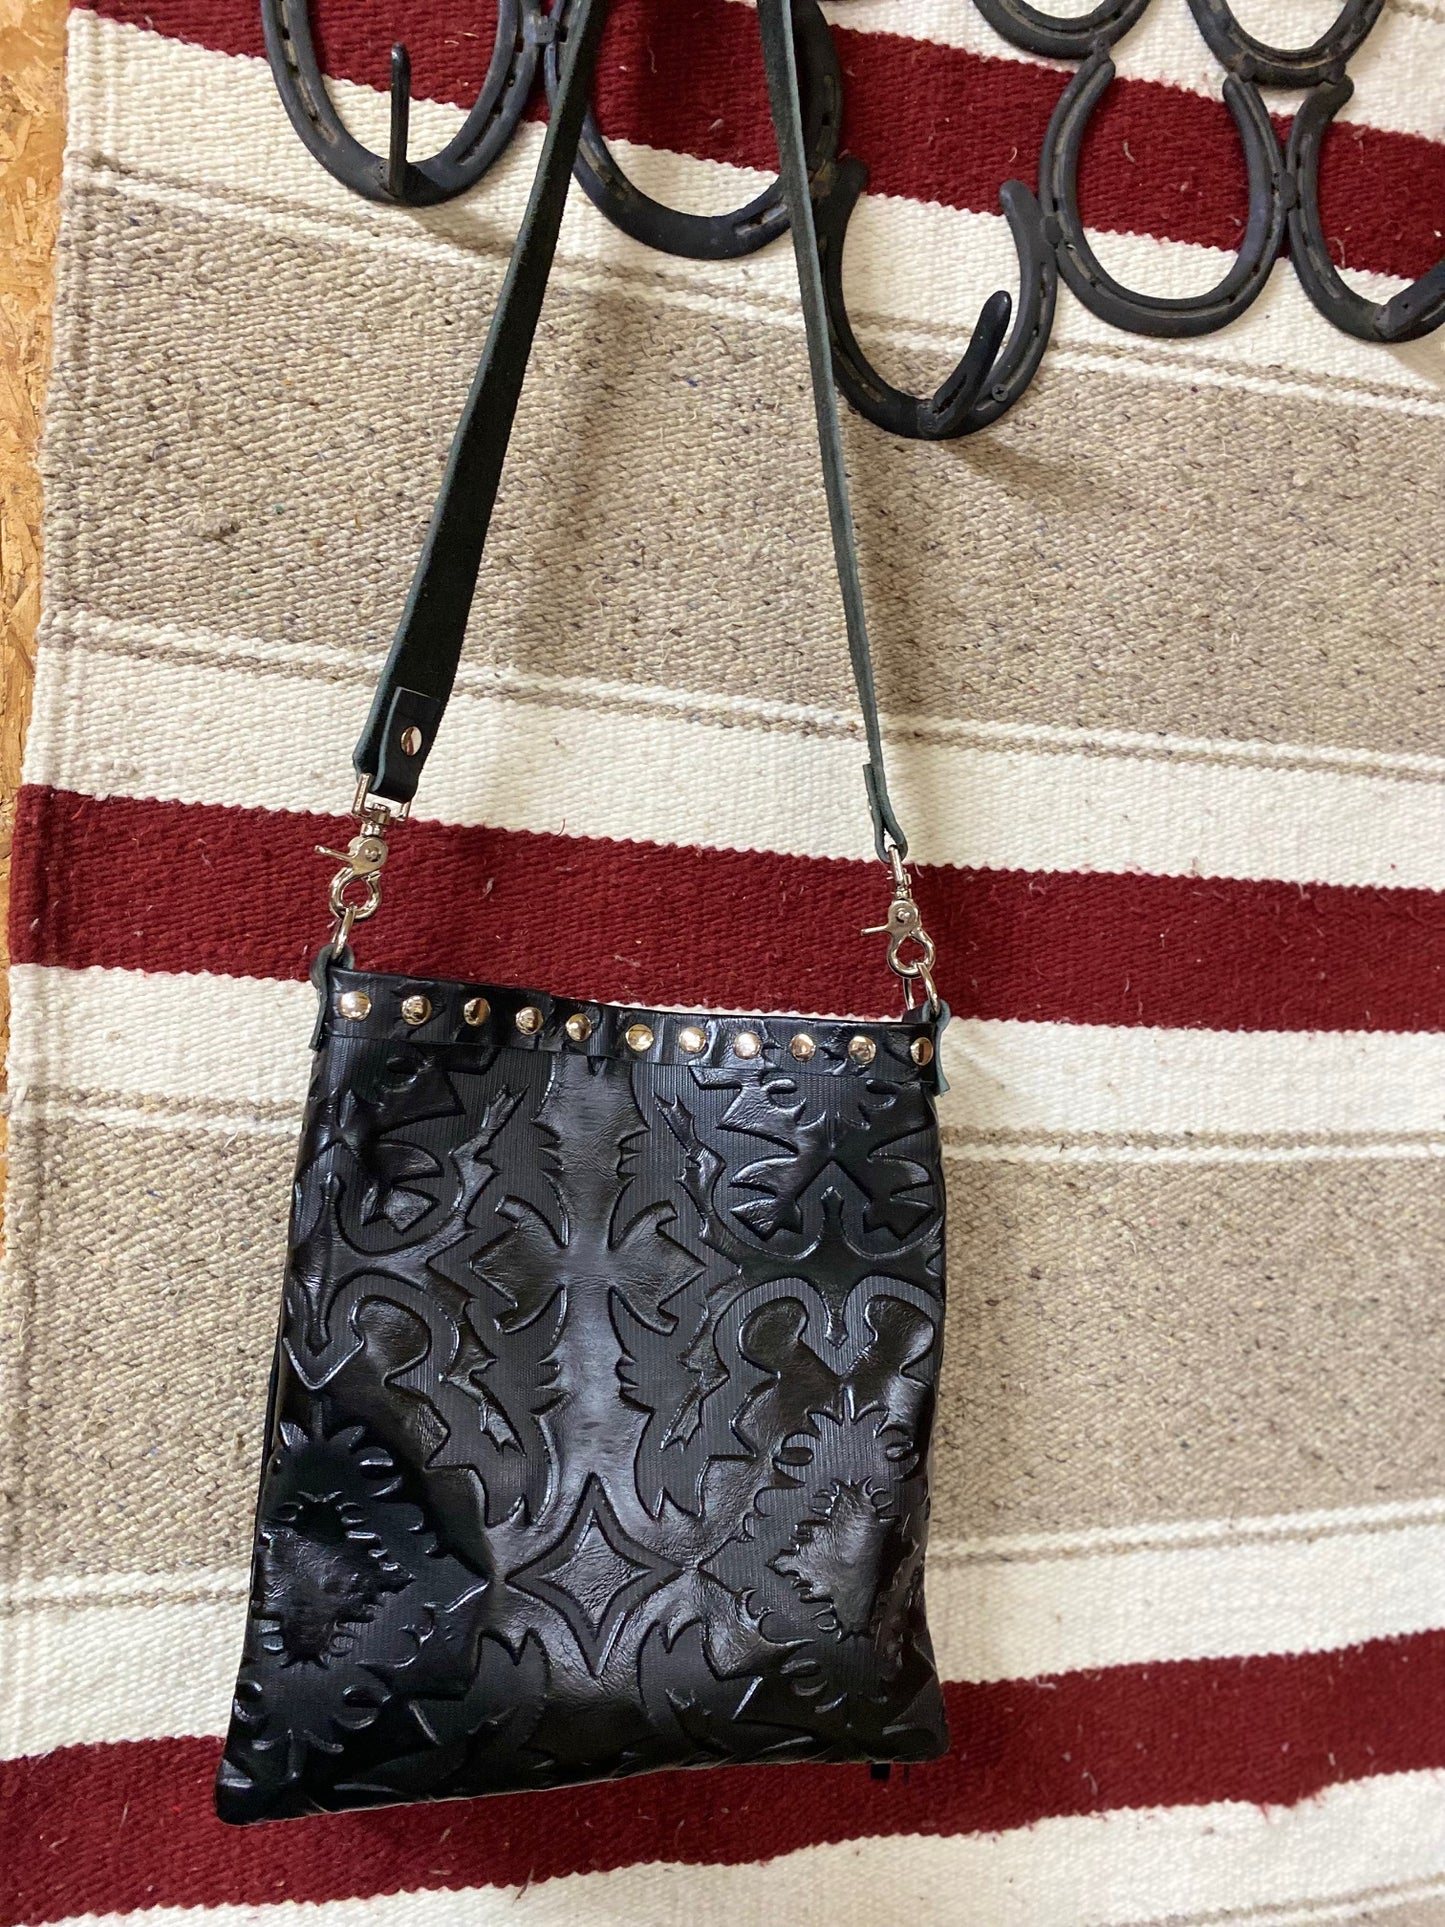 Crossbody purse